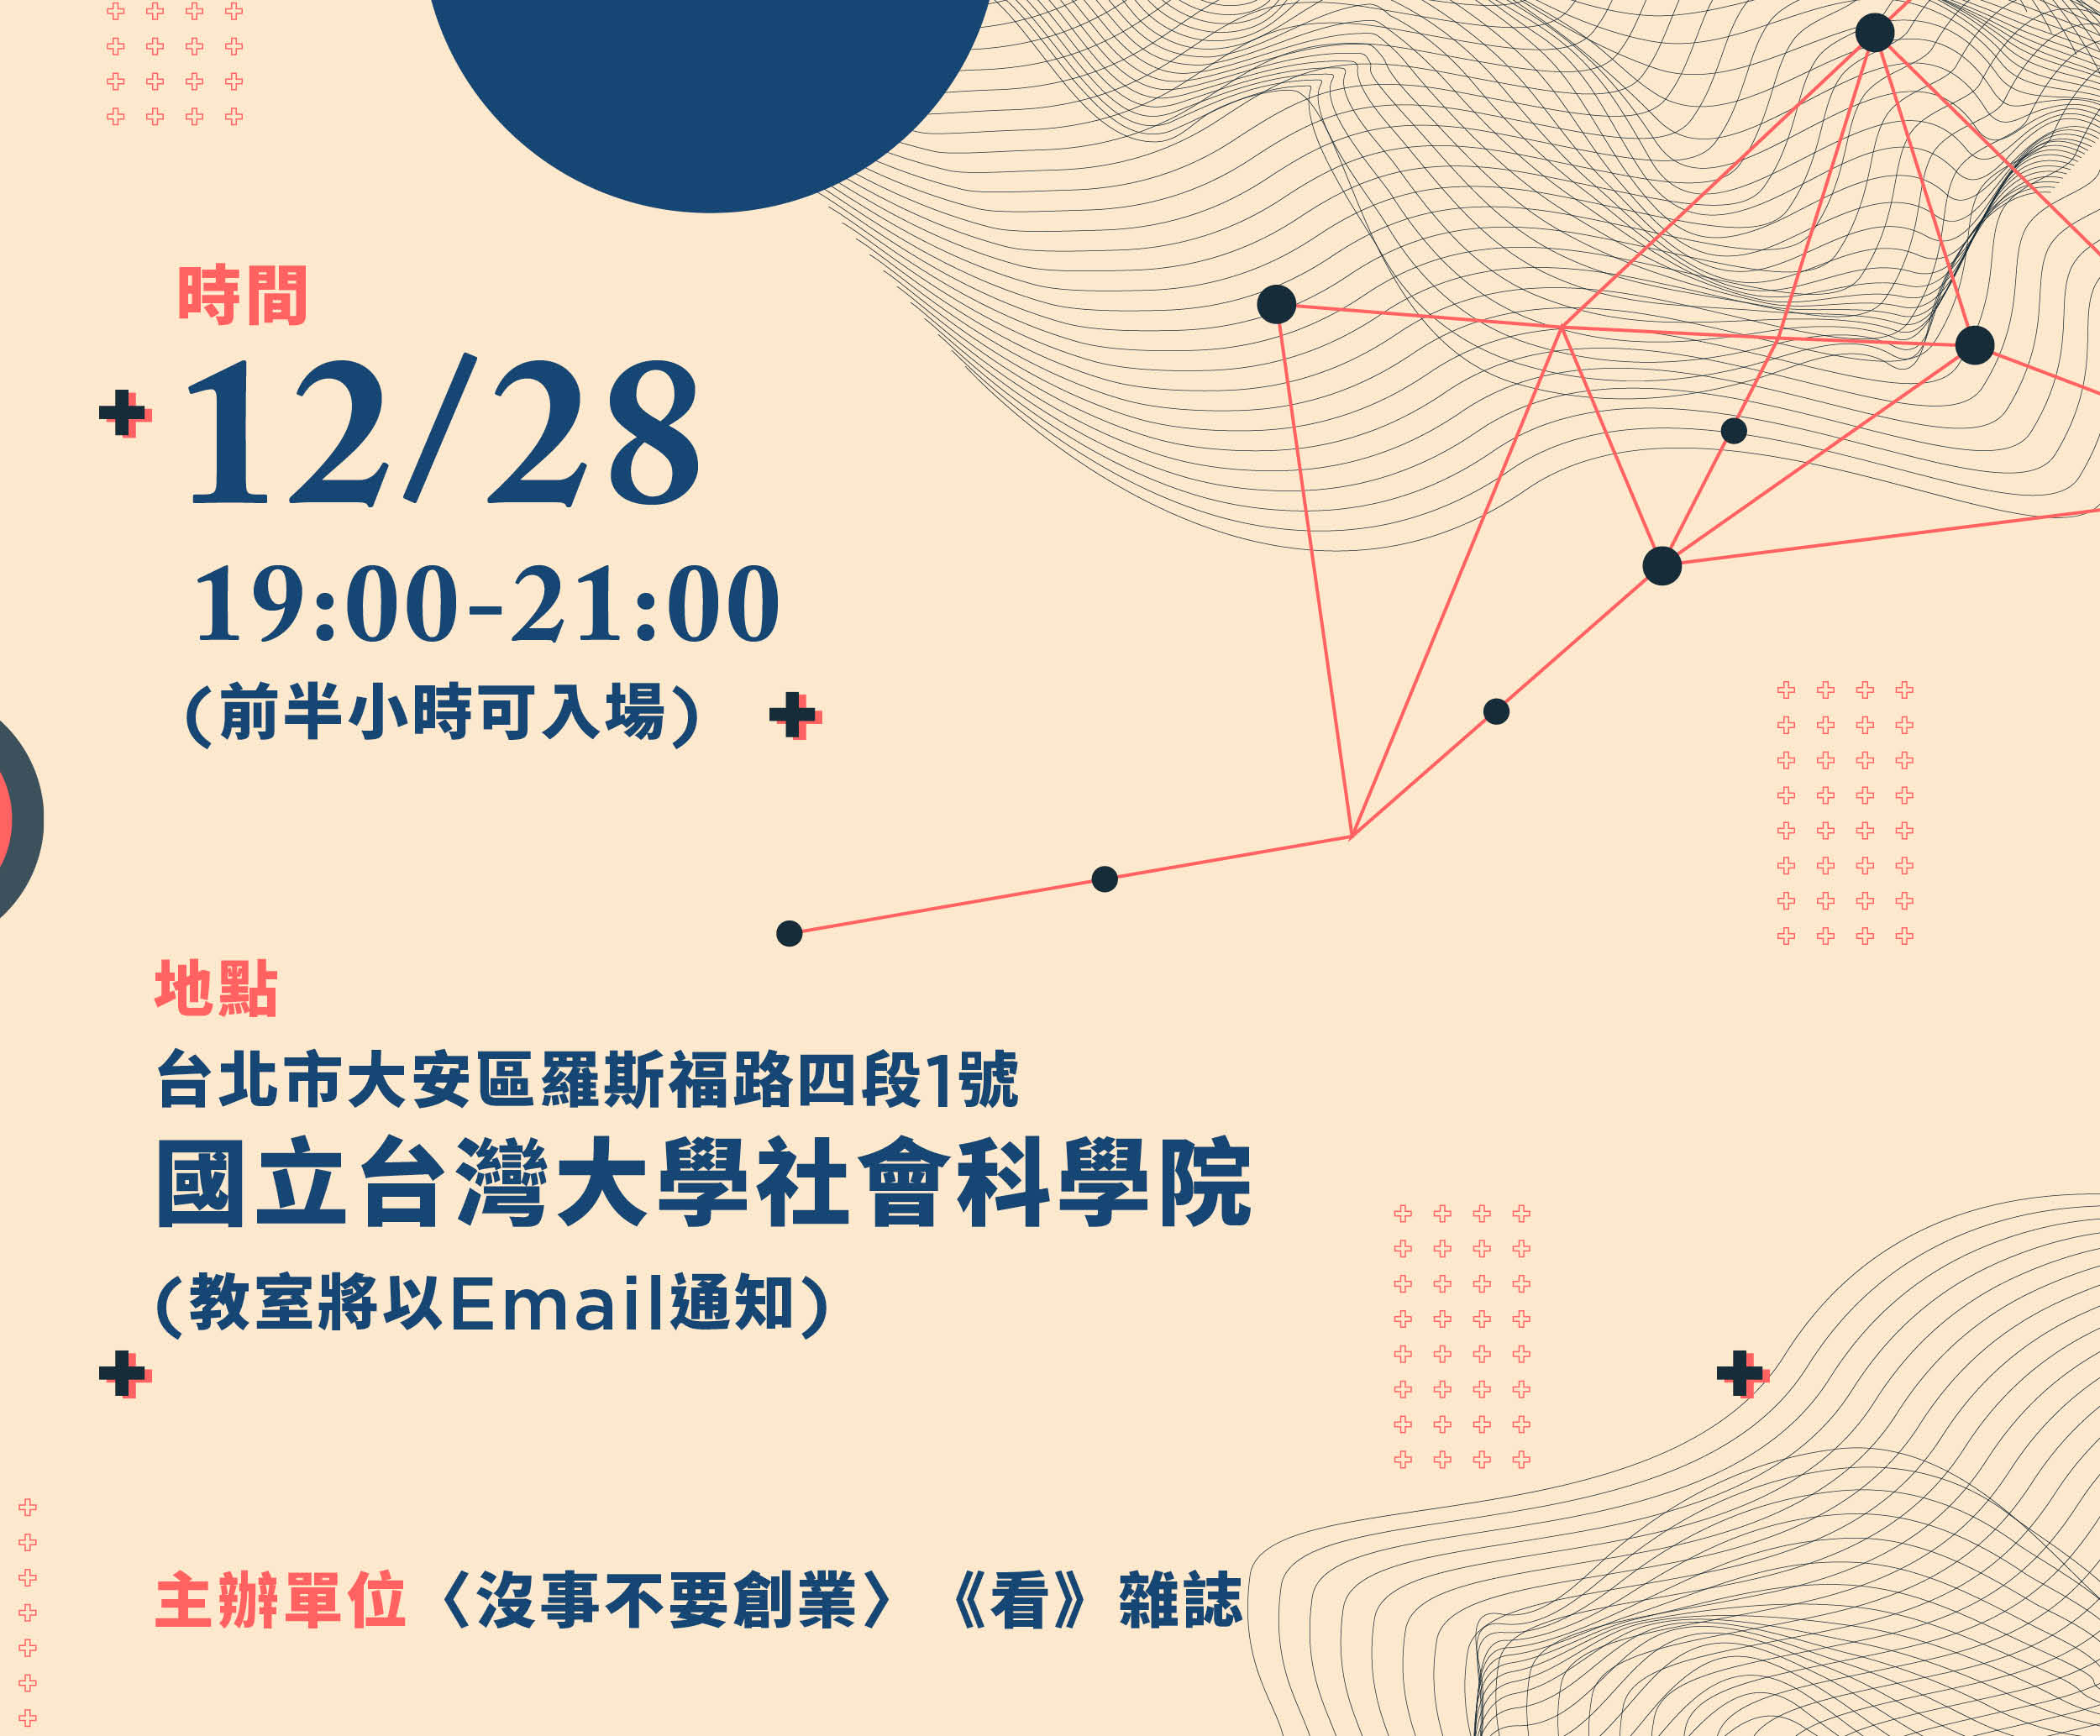 講座時間：
12/28 晚上19-21點，前半小時可入場
講座地點：
國立台灣大學社會科學院 教室將Email通知
主辦單位：
〈沒事不要創業〉-《看》雜誌